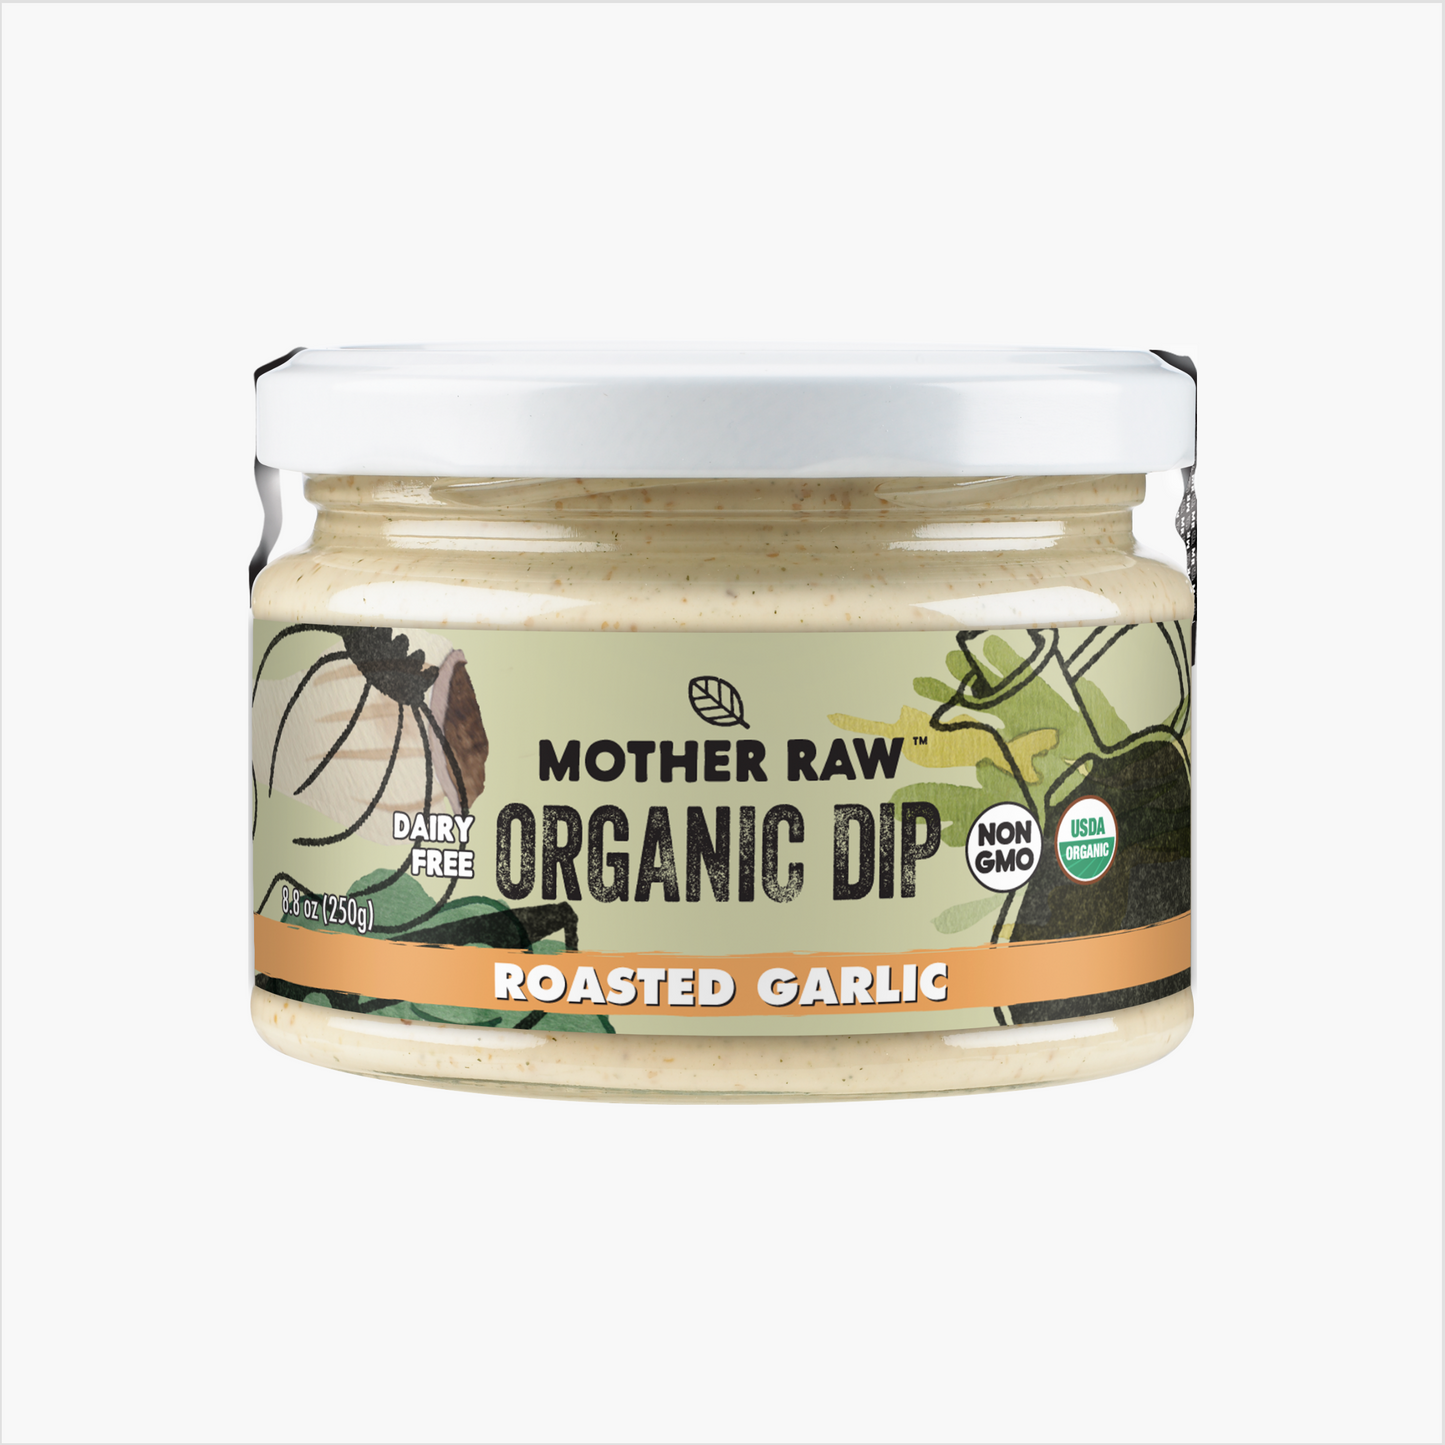 Mother Raw Organic Dairy Free Everything Bagel Dip Jar image